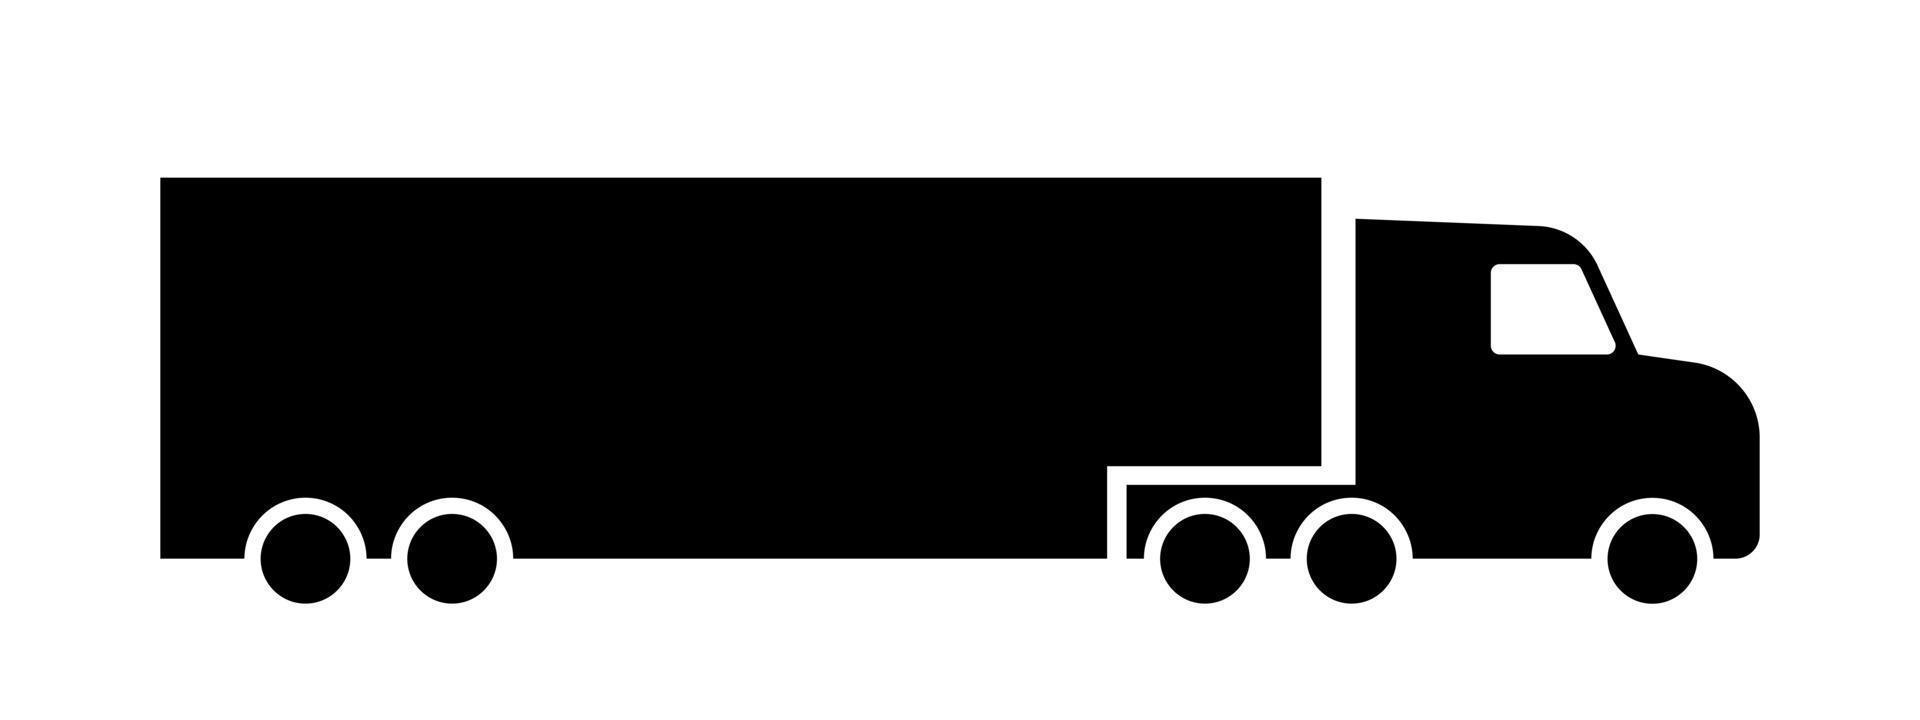 longue transporter un camion icône. transport véhicule pour livraison de des biens à travers pays et intercontinental transport avec lourd conteneurs et vecteur charger.